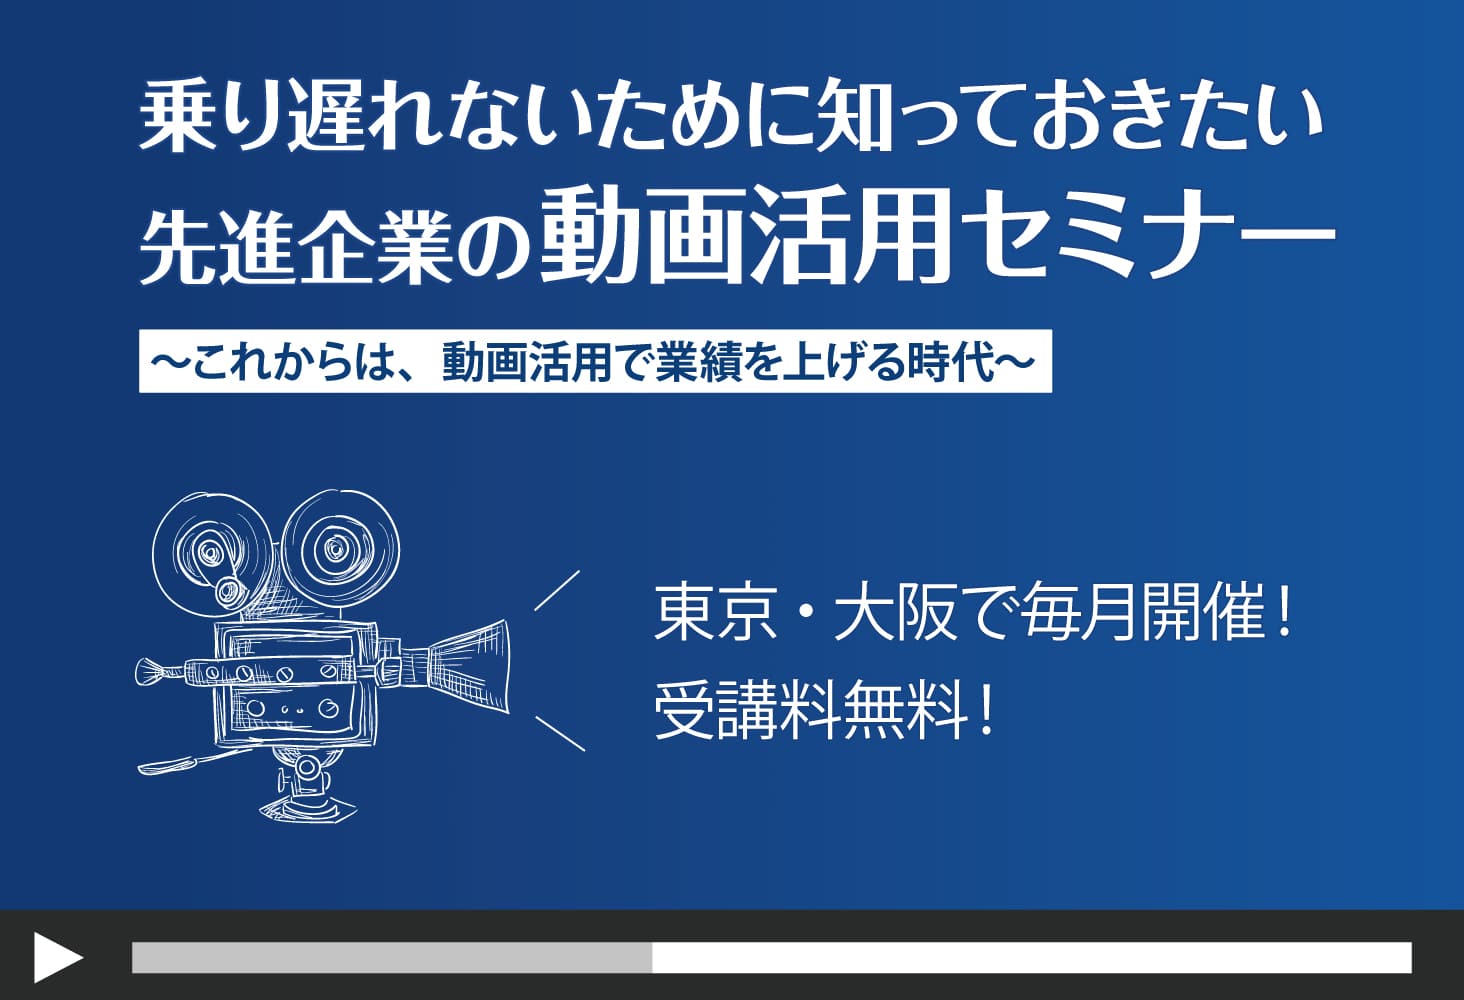 東京と大阪の2拠点で開催予定の「動画活用セミナー」のお知らせ。